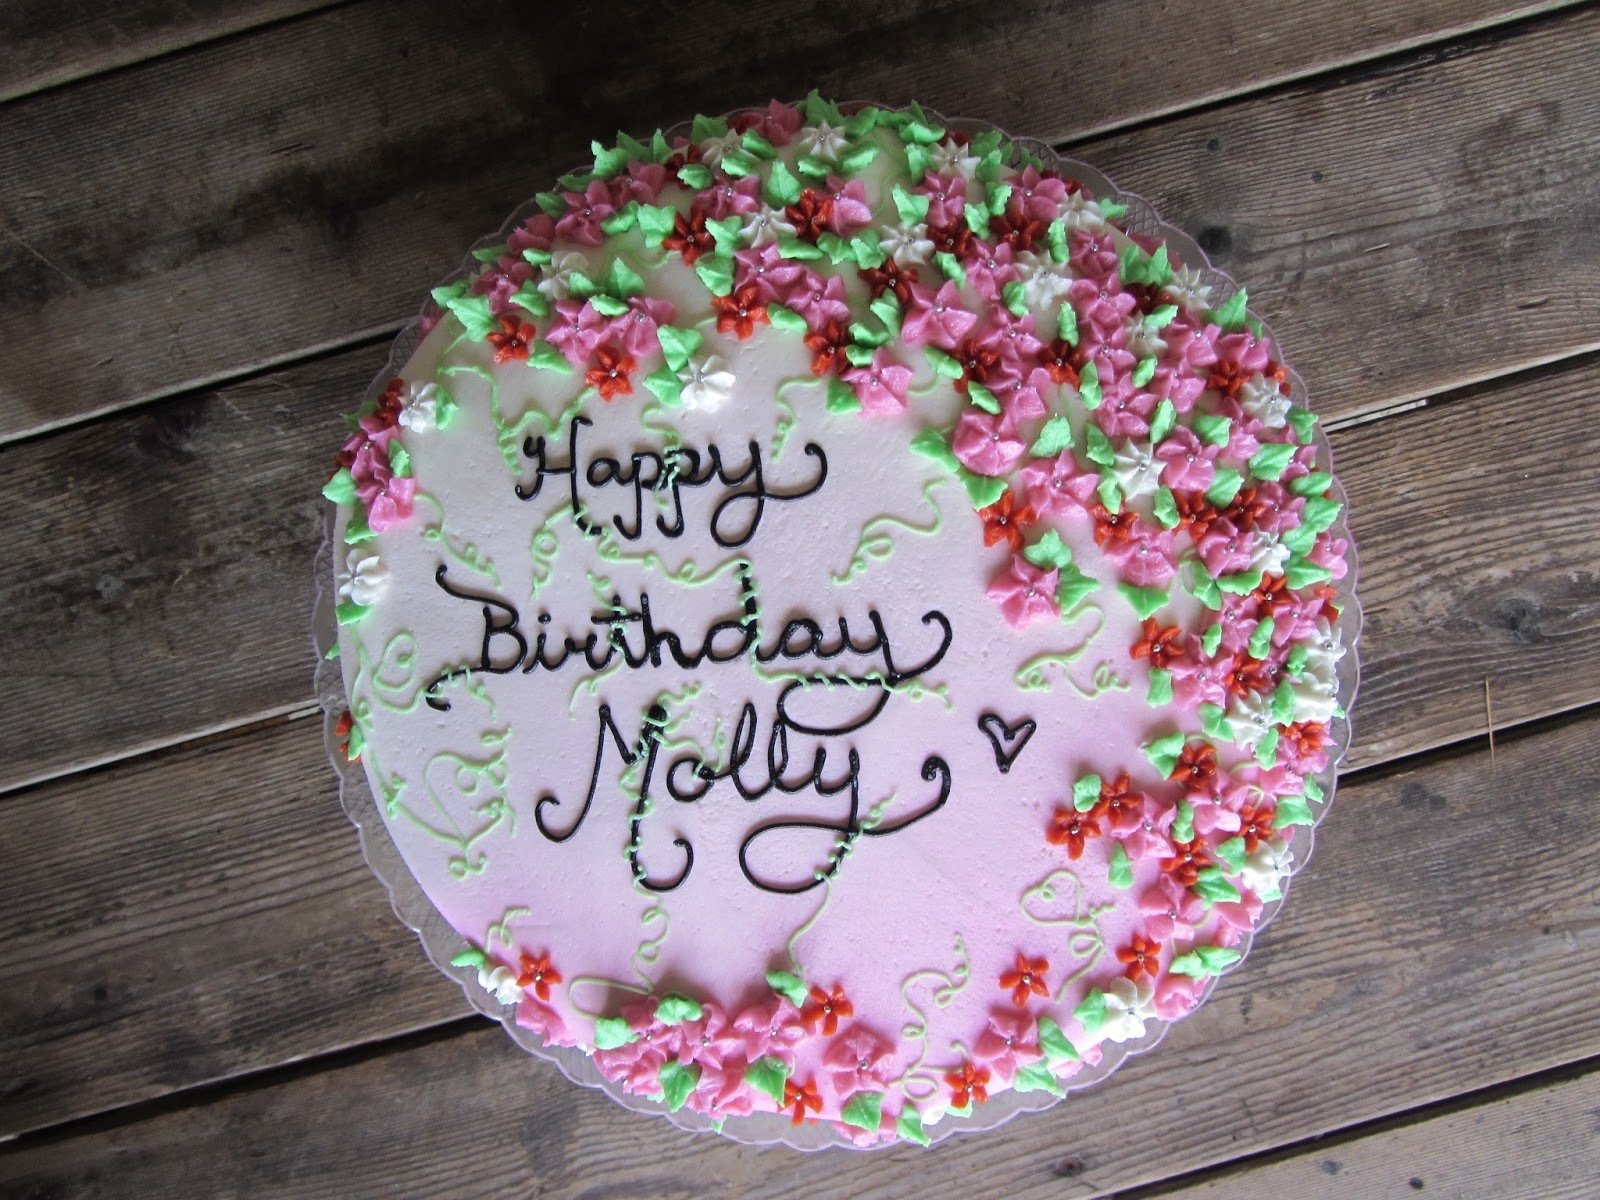 Надписи на торт печатью. Торт с днем рождения!. Надпись на торте с днем рождения. Красивые надписи на торт. С днём рождения женщине тортик.